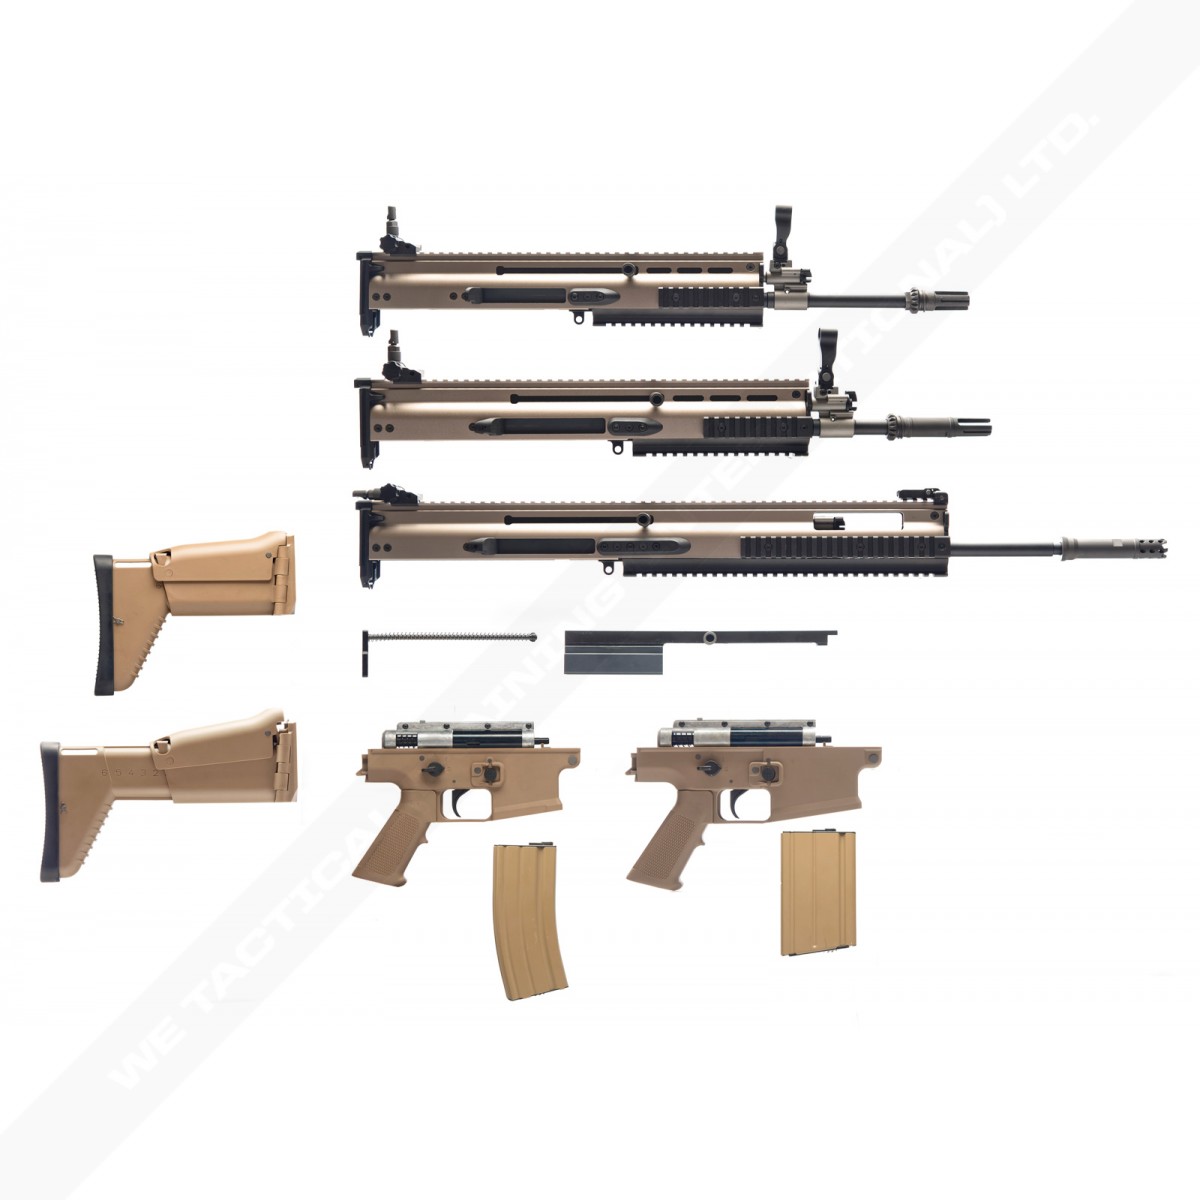 Mk 20 Ssr Assault Rifle HD wallpapers, Desktop wallpaper - most viewed